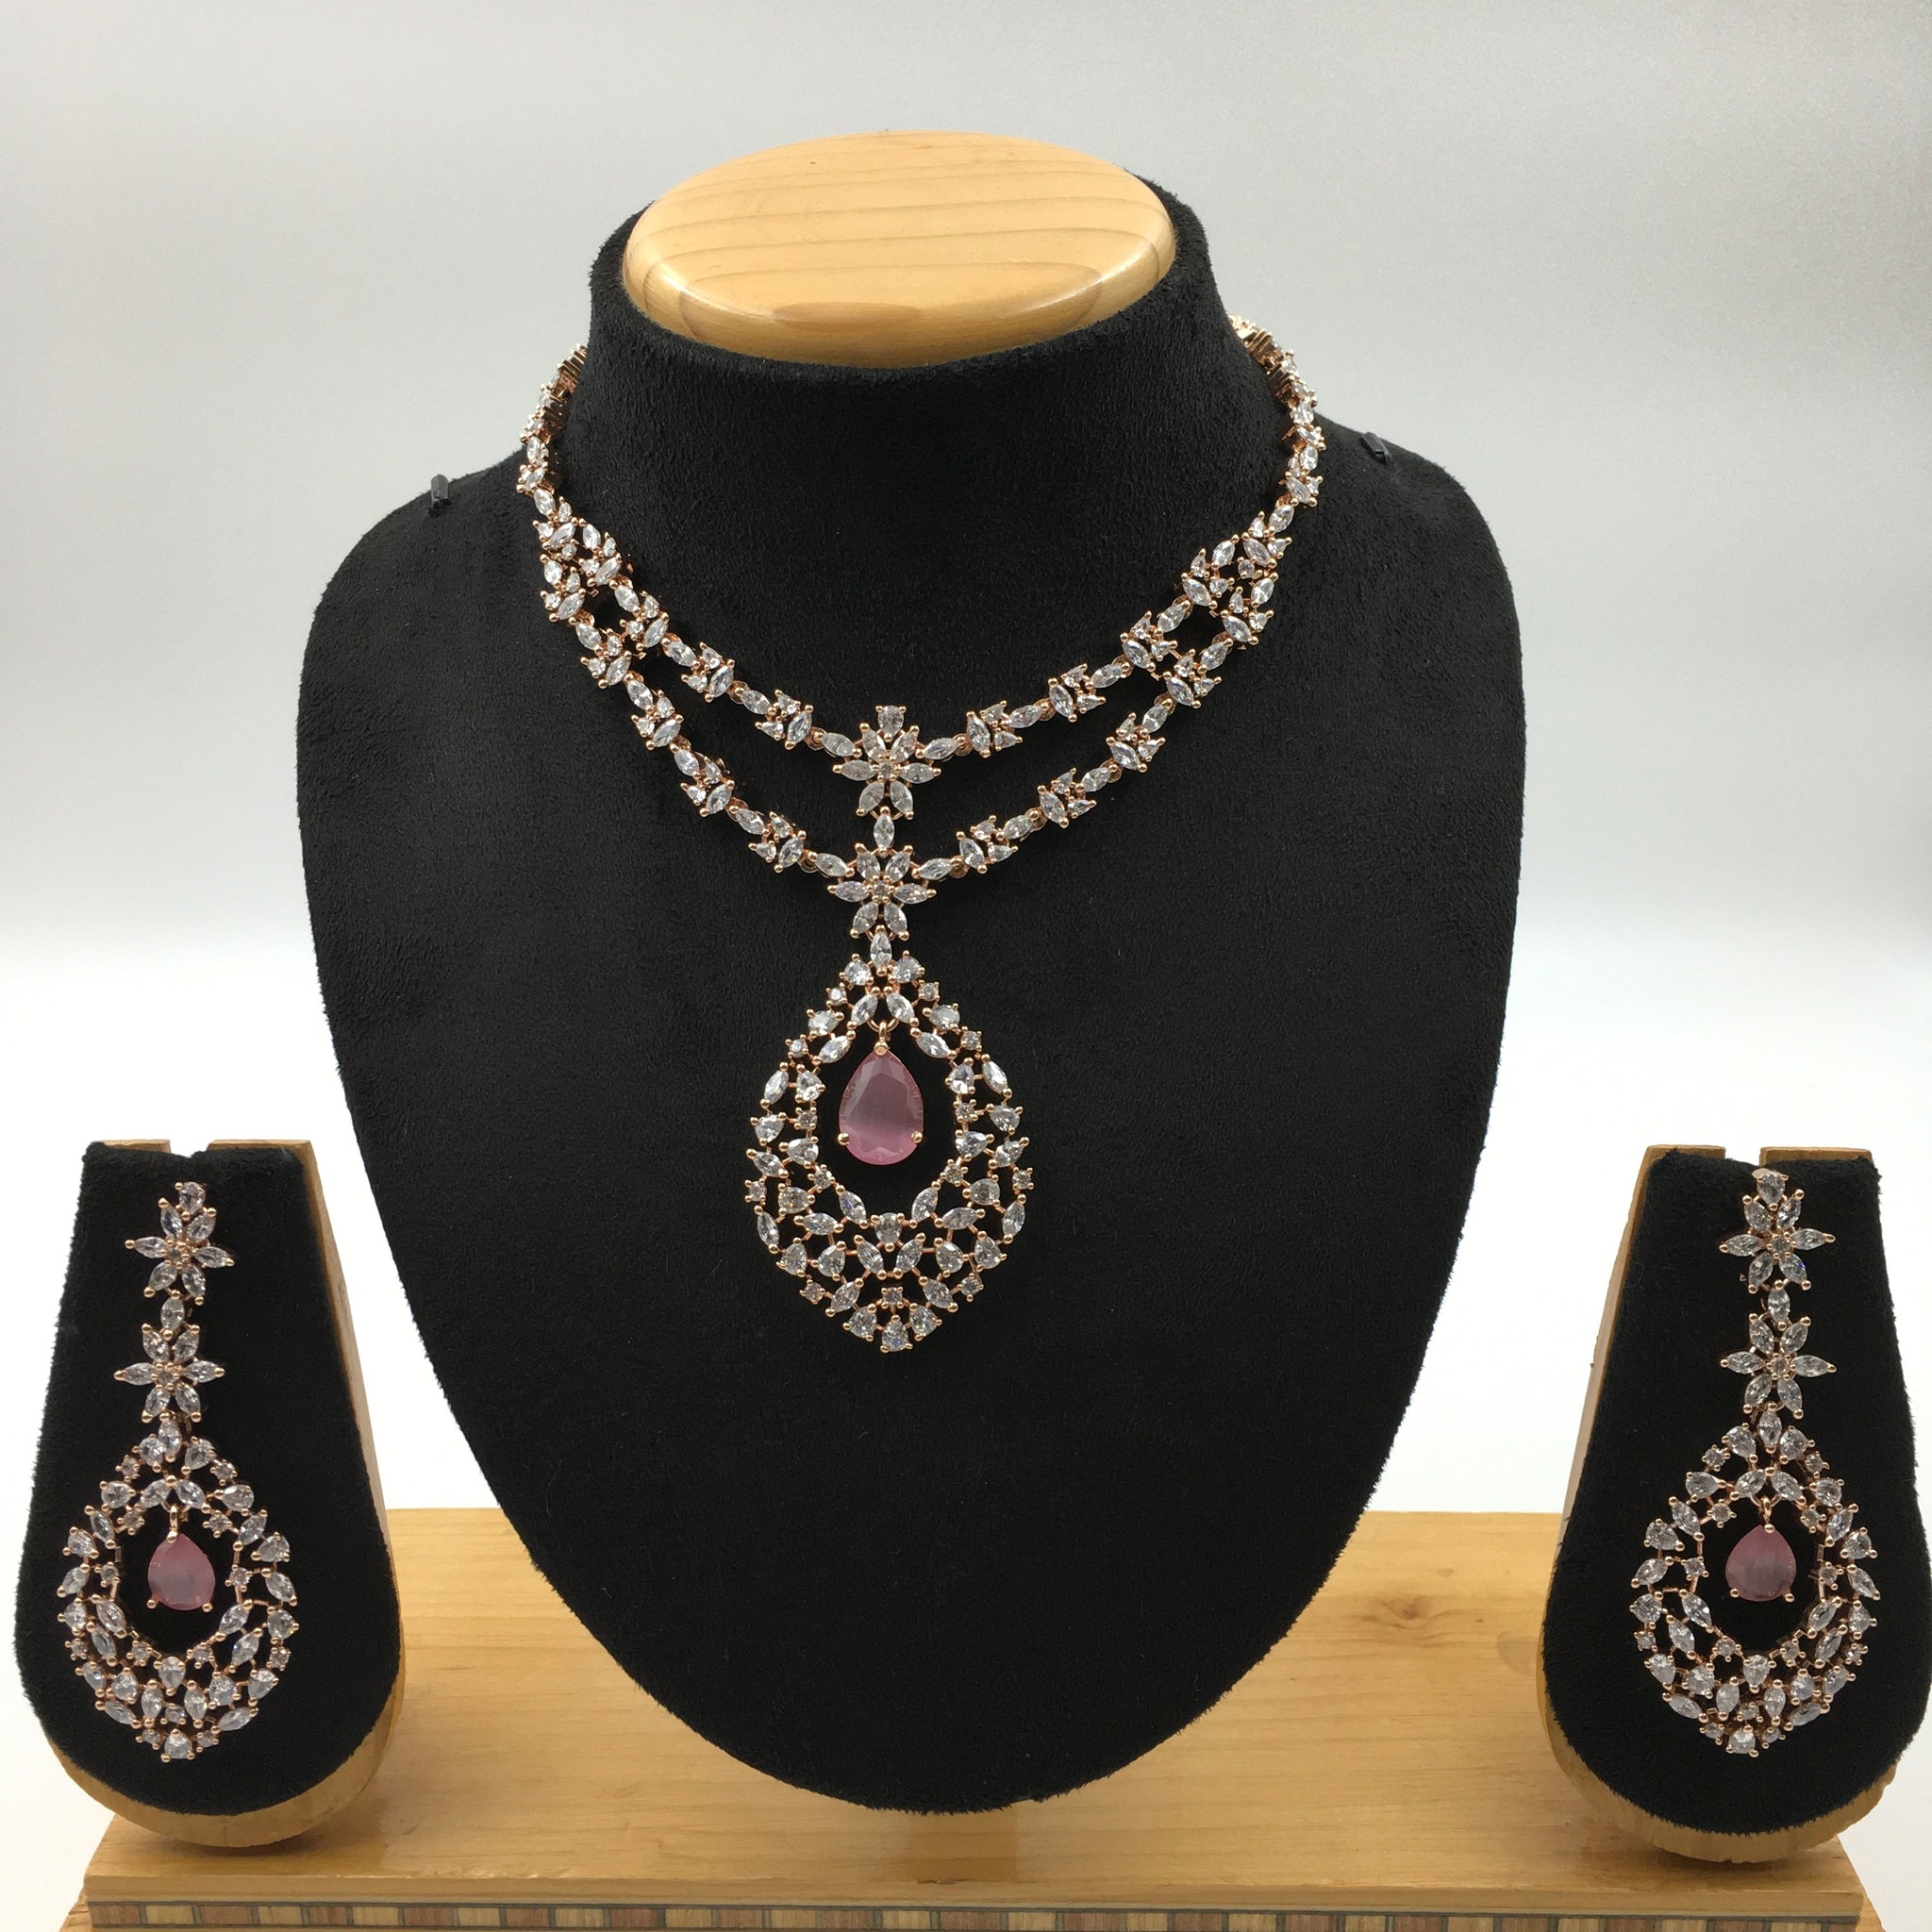 Dazzles Jewellery - Best Quality Artficial Imitation Jewellery – Dazzles  Fashion and Costume Jewellery